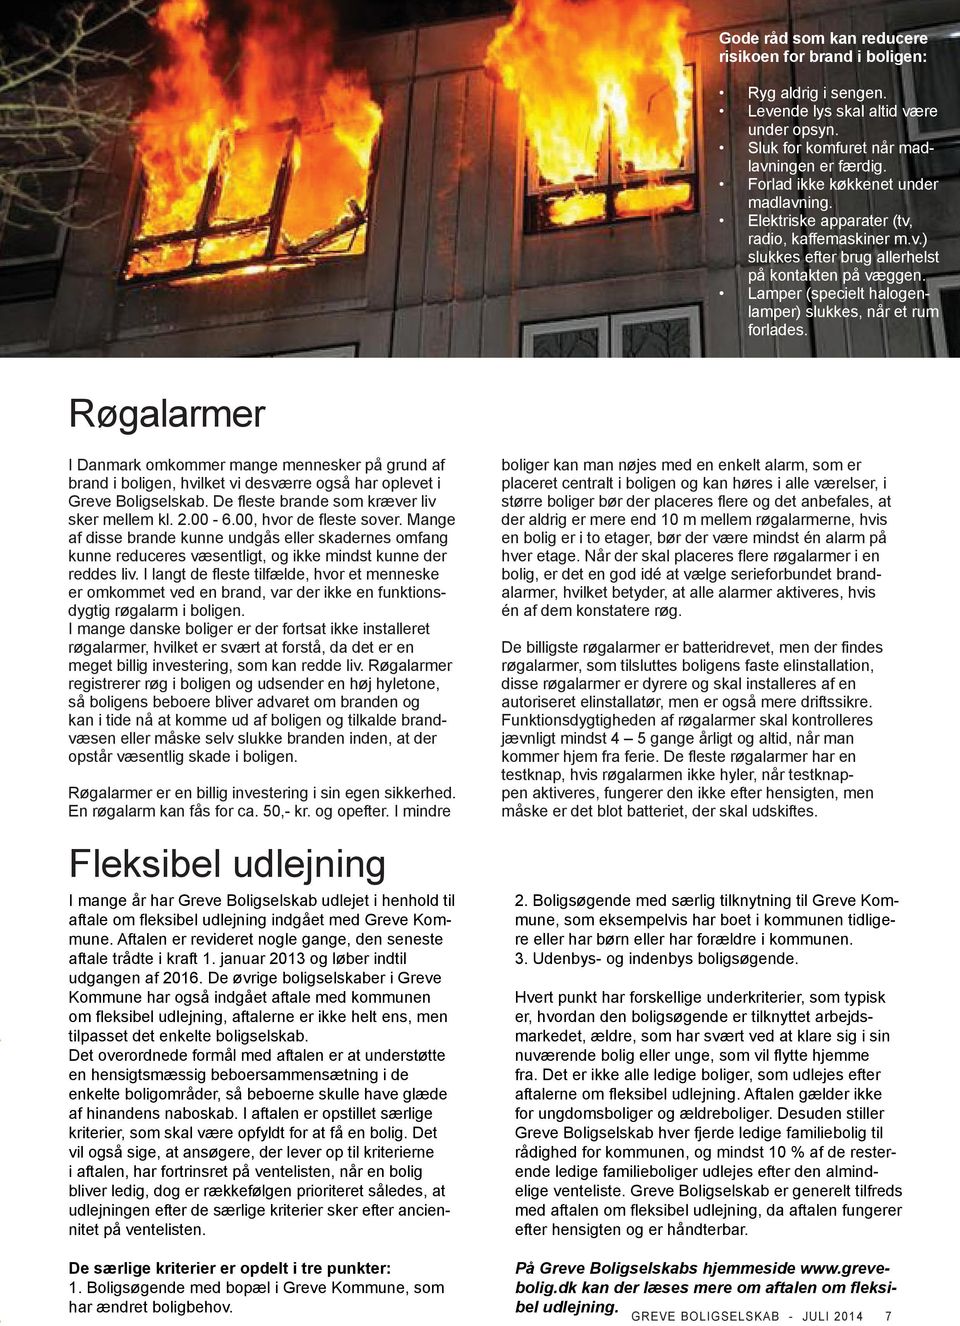 Lamper (specielt halogenlamper) slukkes, når et rum forlades. Røgalarmer I Danmark omkommer mange mennesker på grund af brand i boligen, hvilket vi desværre også har oplevet i Greve Boligselskab.